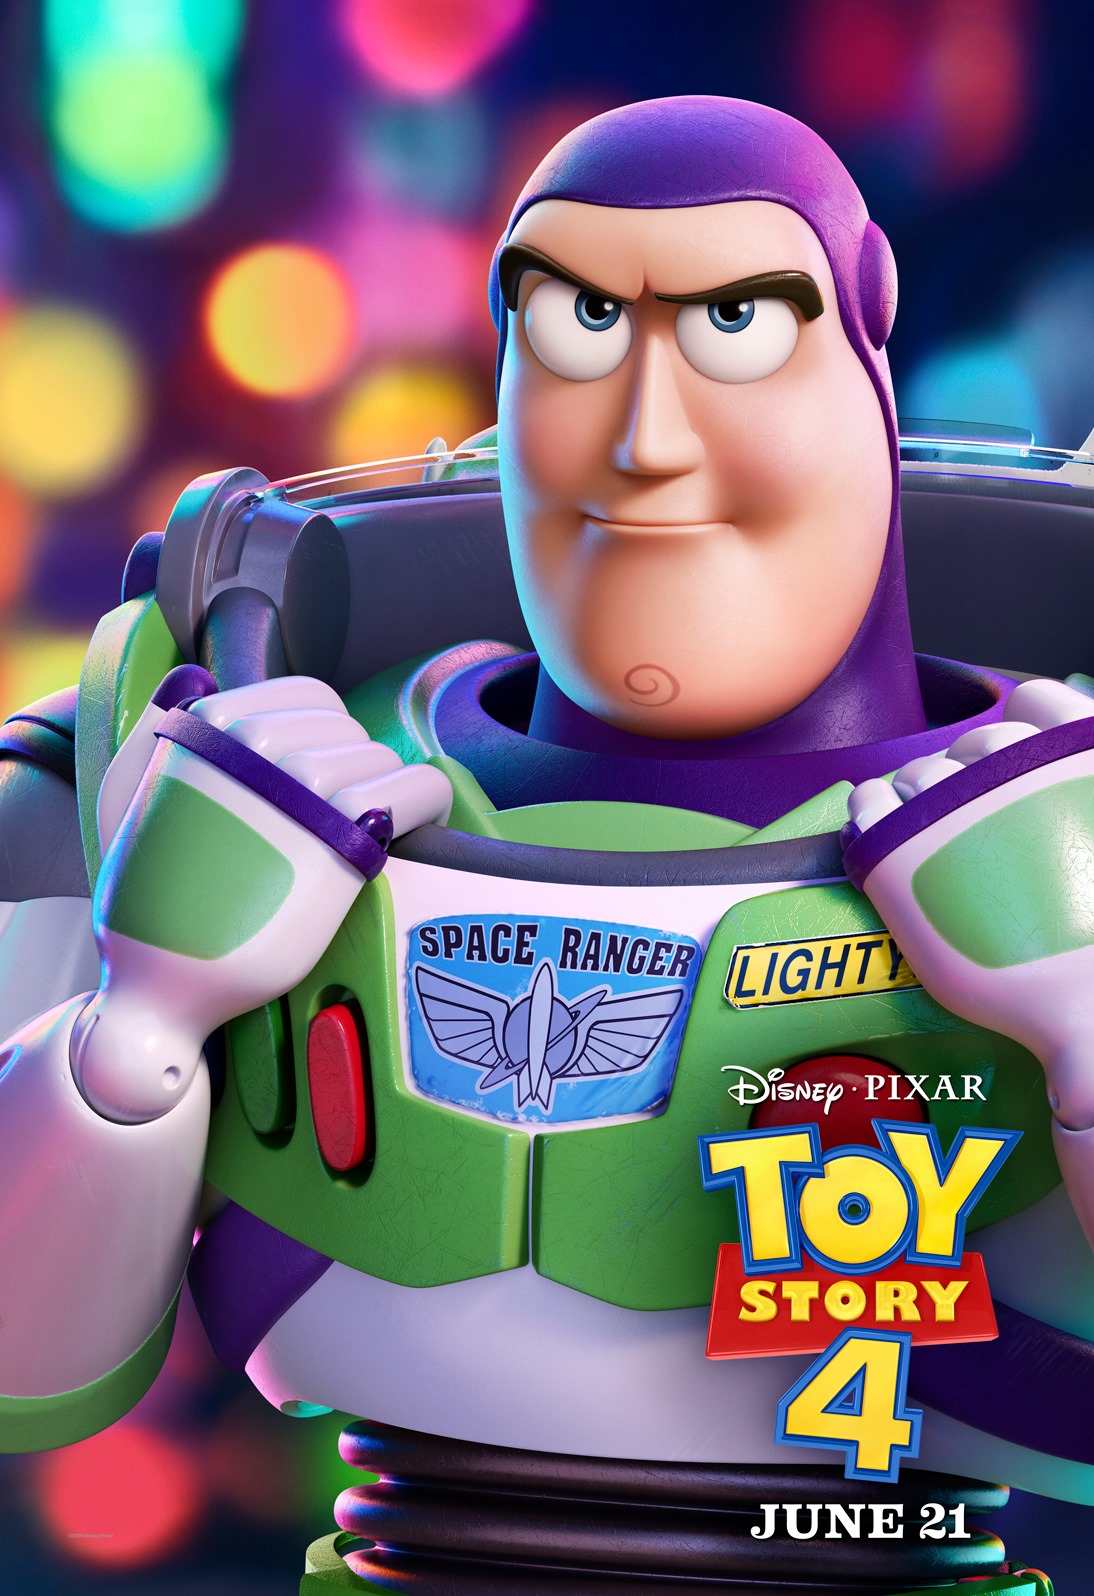 Buzz Lightyear Toy Story 4